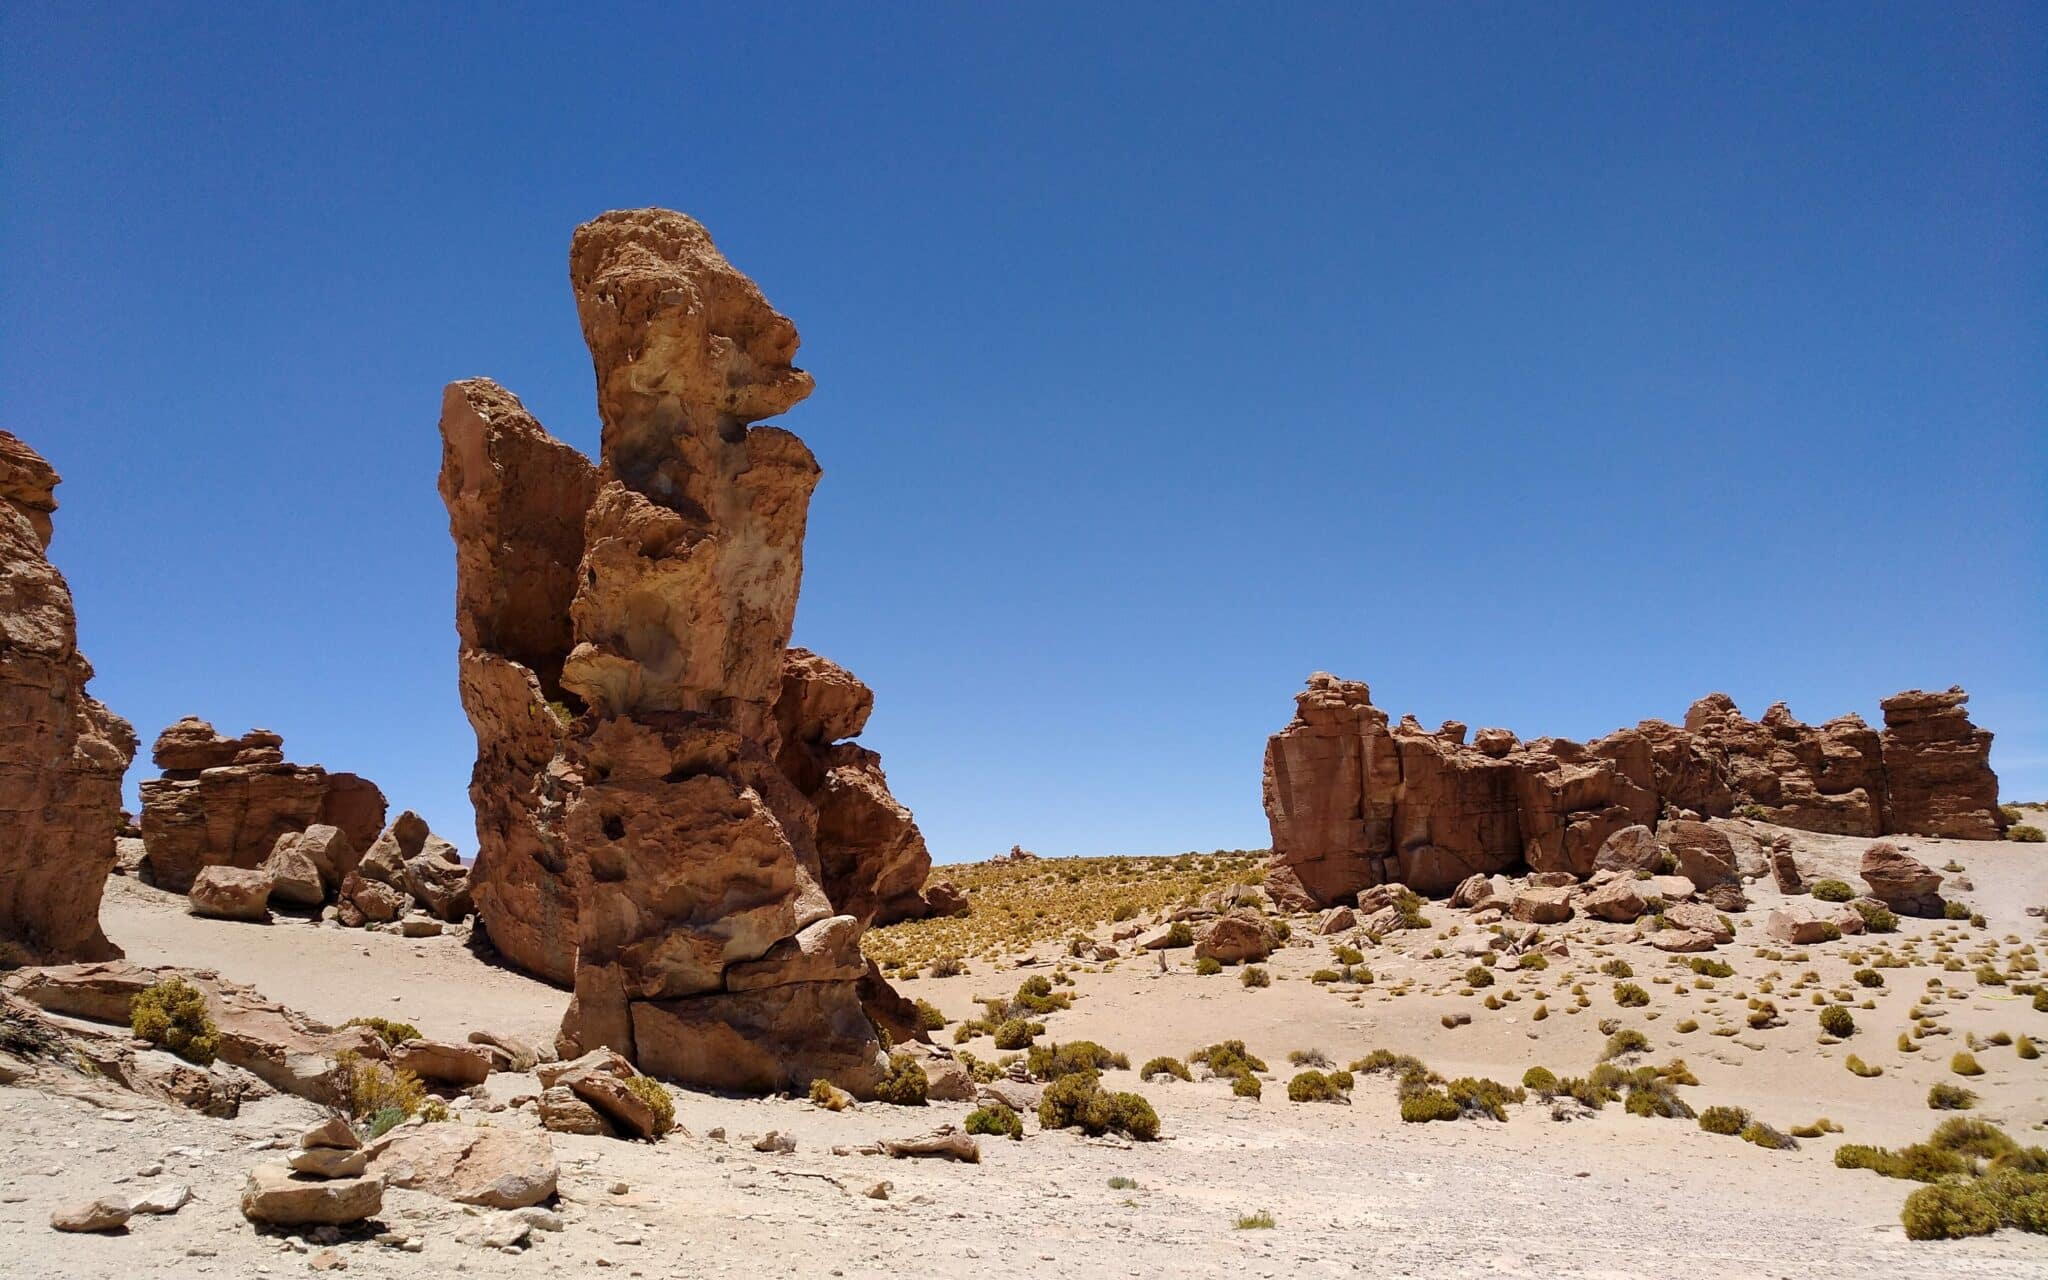 Meterhohe Felsformationen, die eine besondere Form haben.